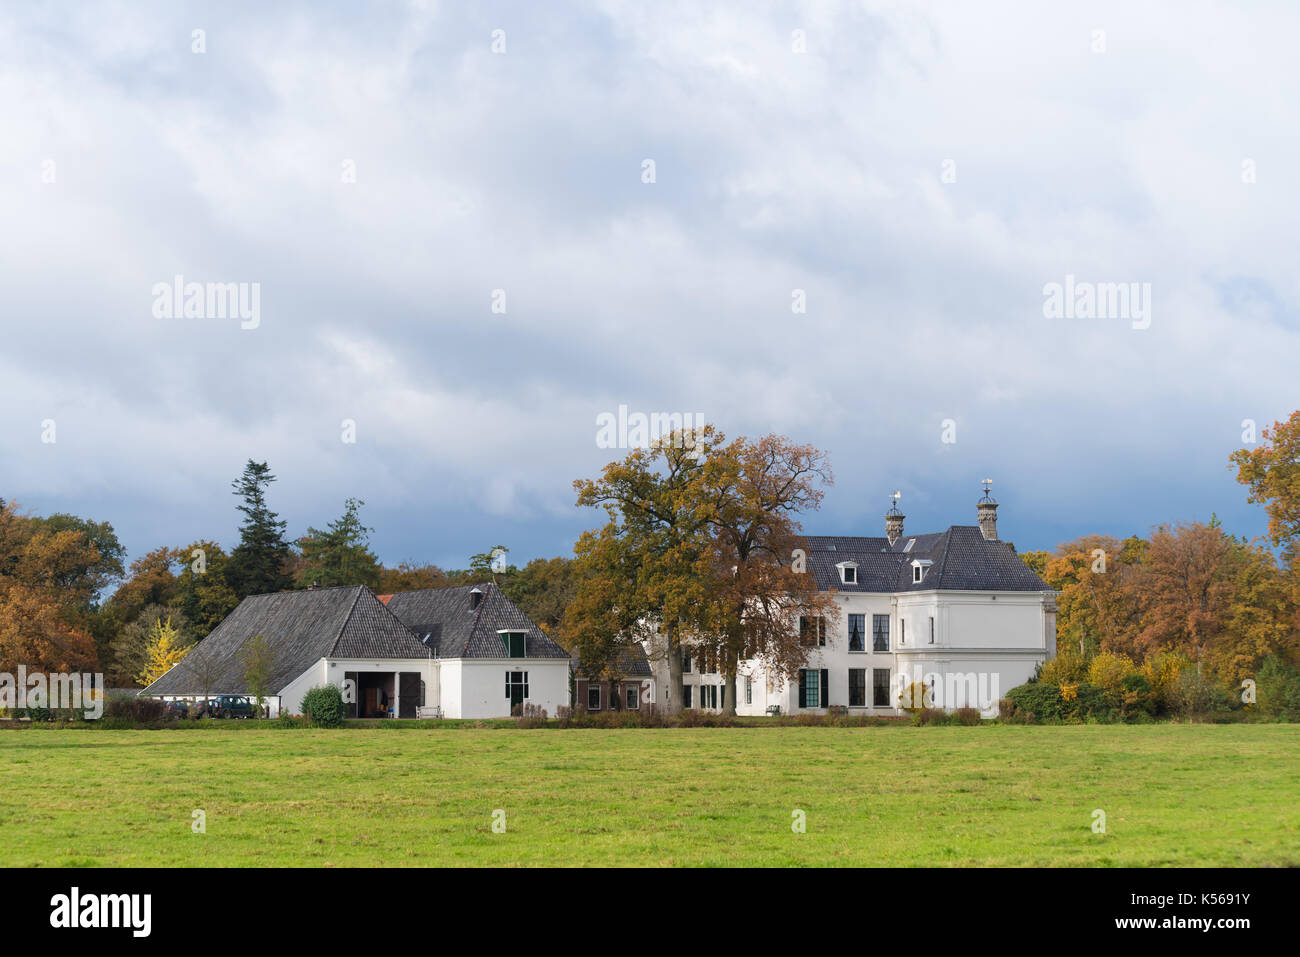 DENEKAMP, Niederlande - 2 November, 2016: singraven Herrenhaus mit klassizistischen Fassade in einer ländlichen Umgebung Stockfoto